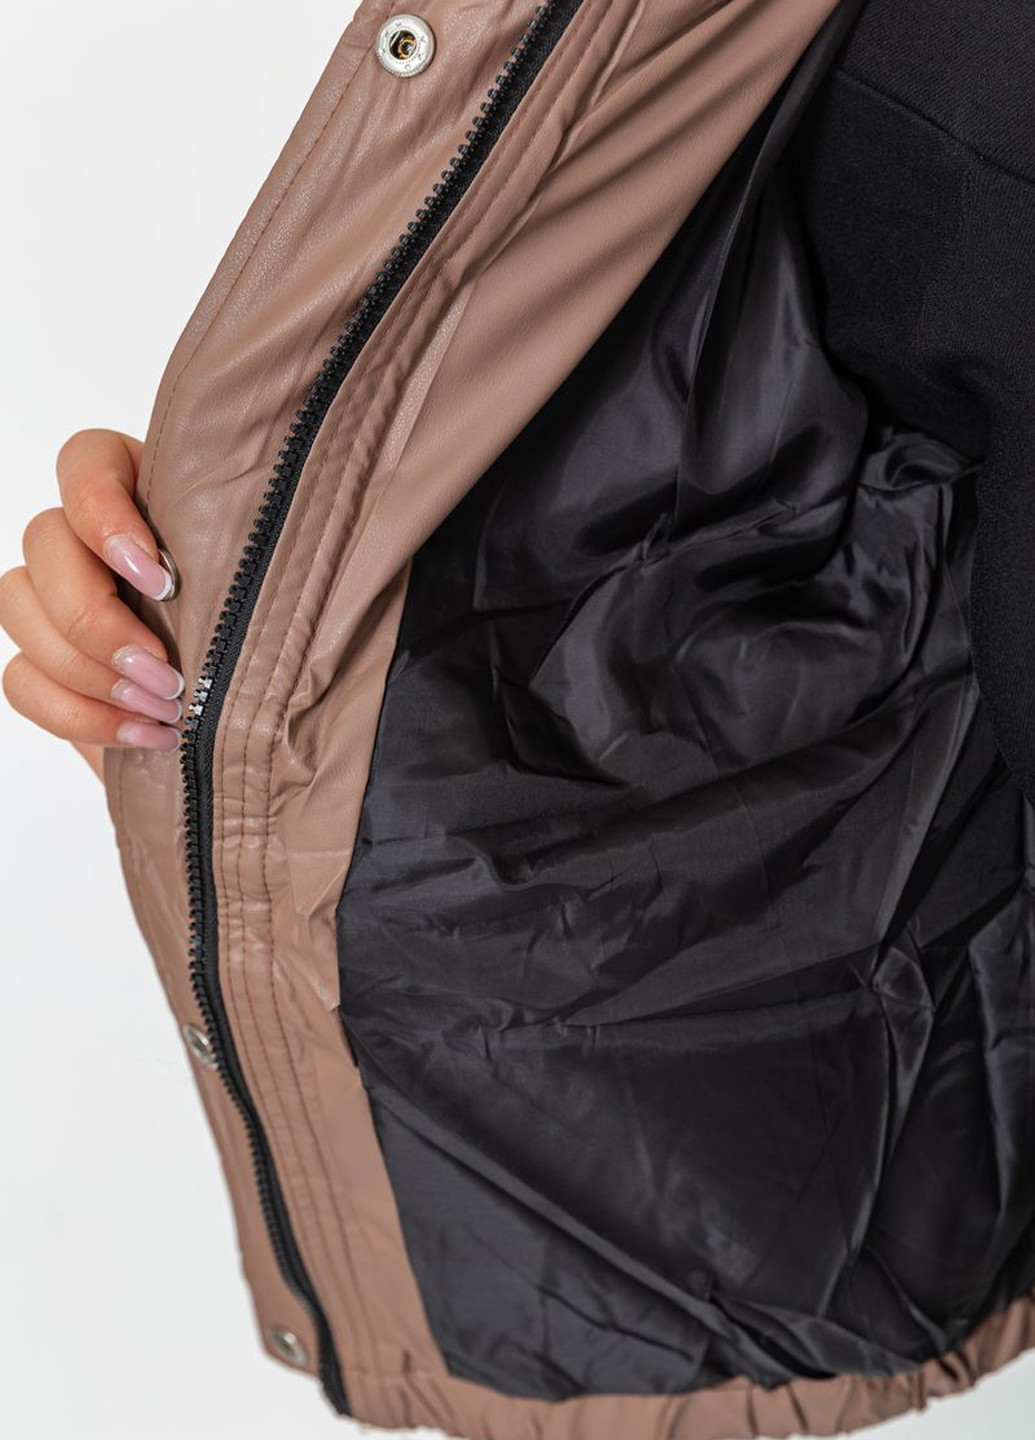 Светло-коричневая демисезонная куртка Ager